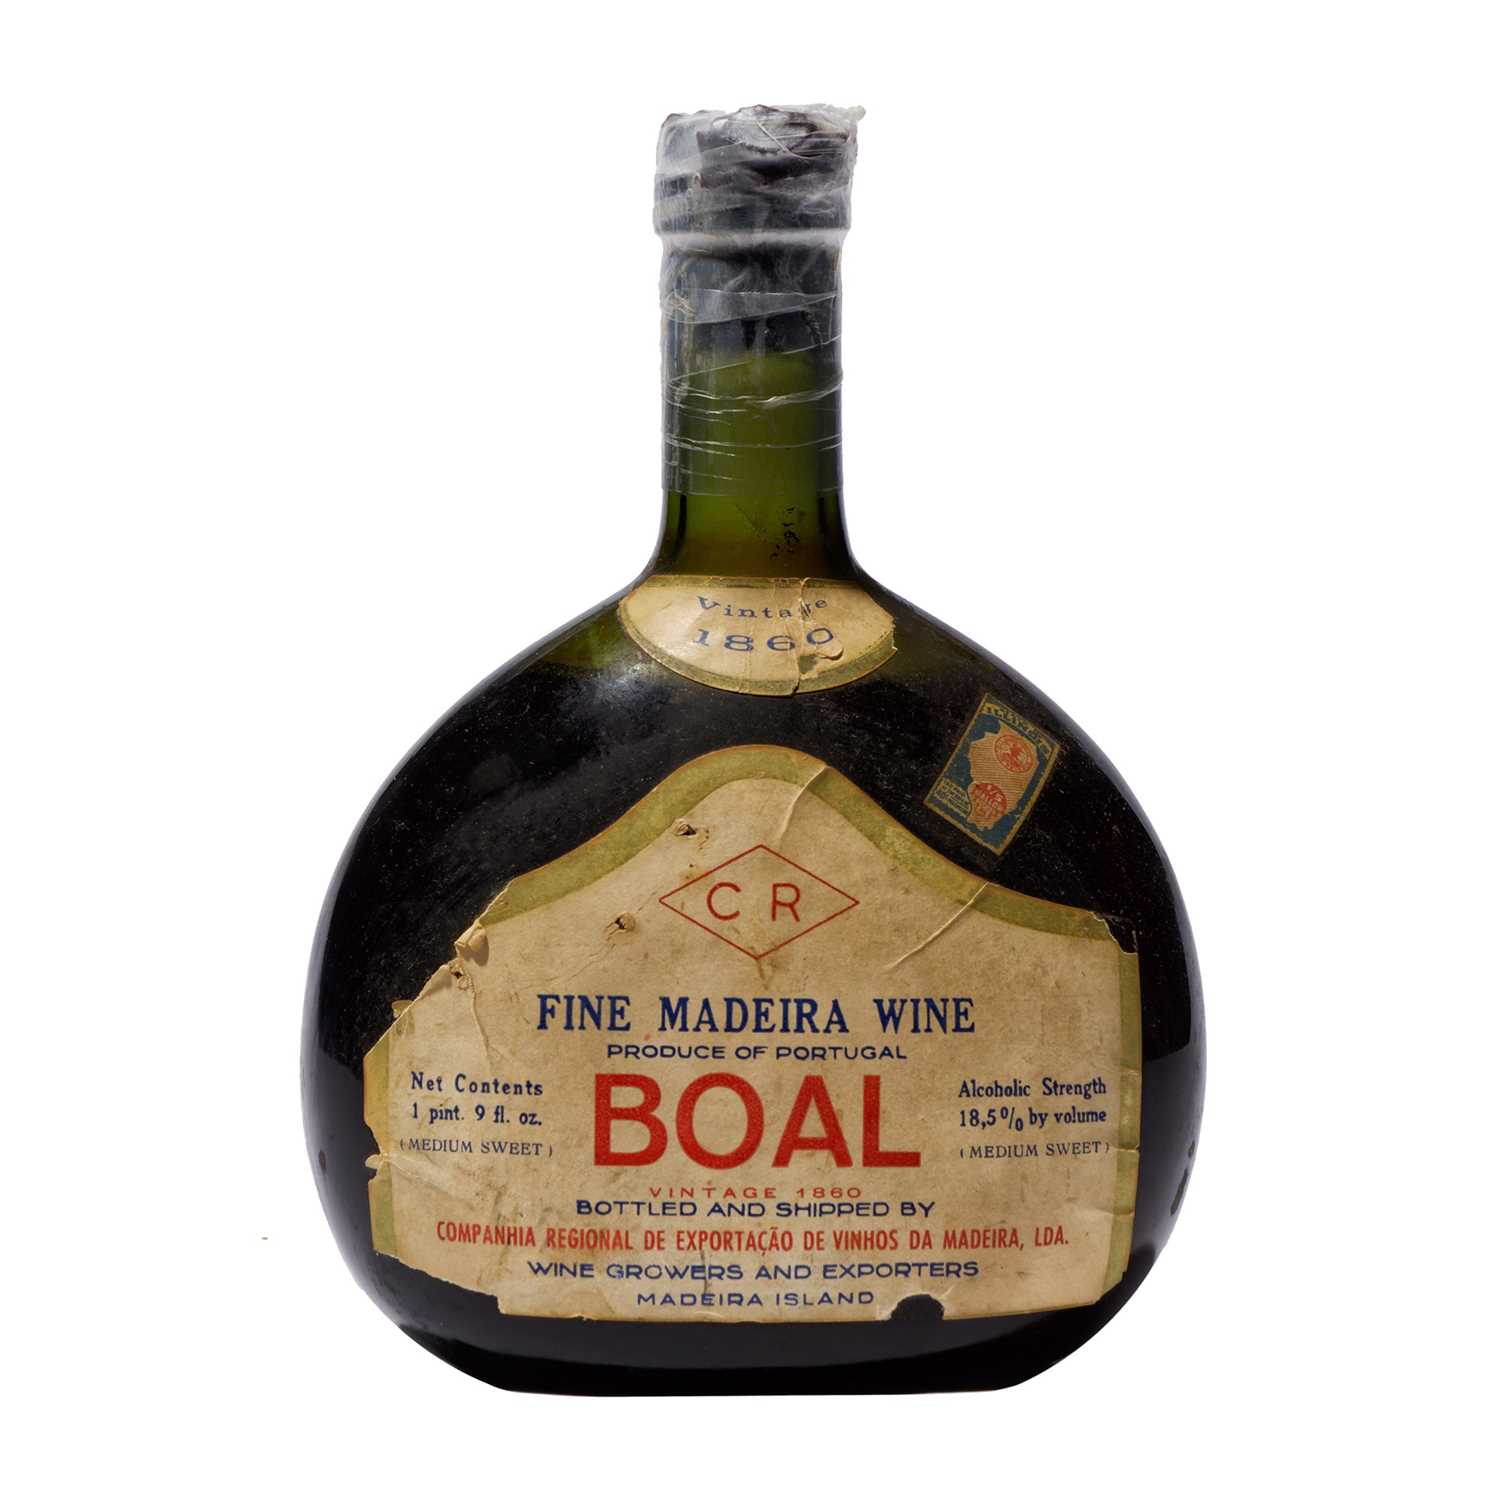 Lot 12 - 1 bottle 1860 Boal